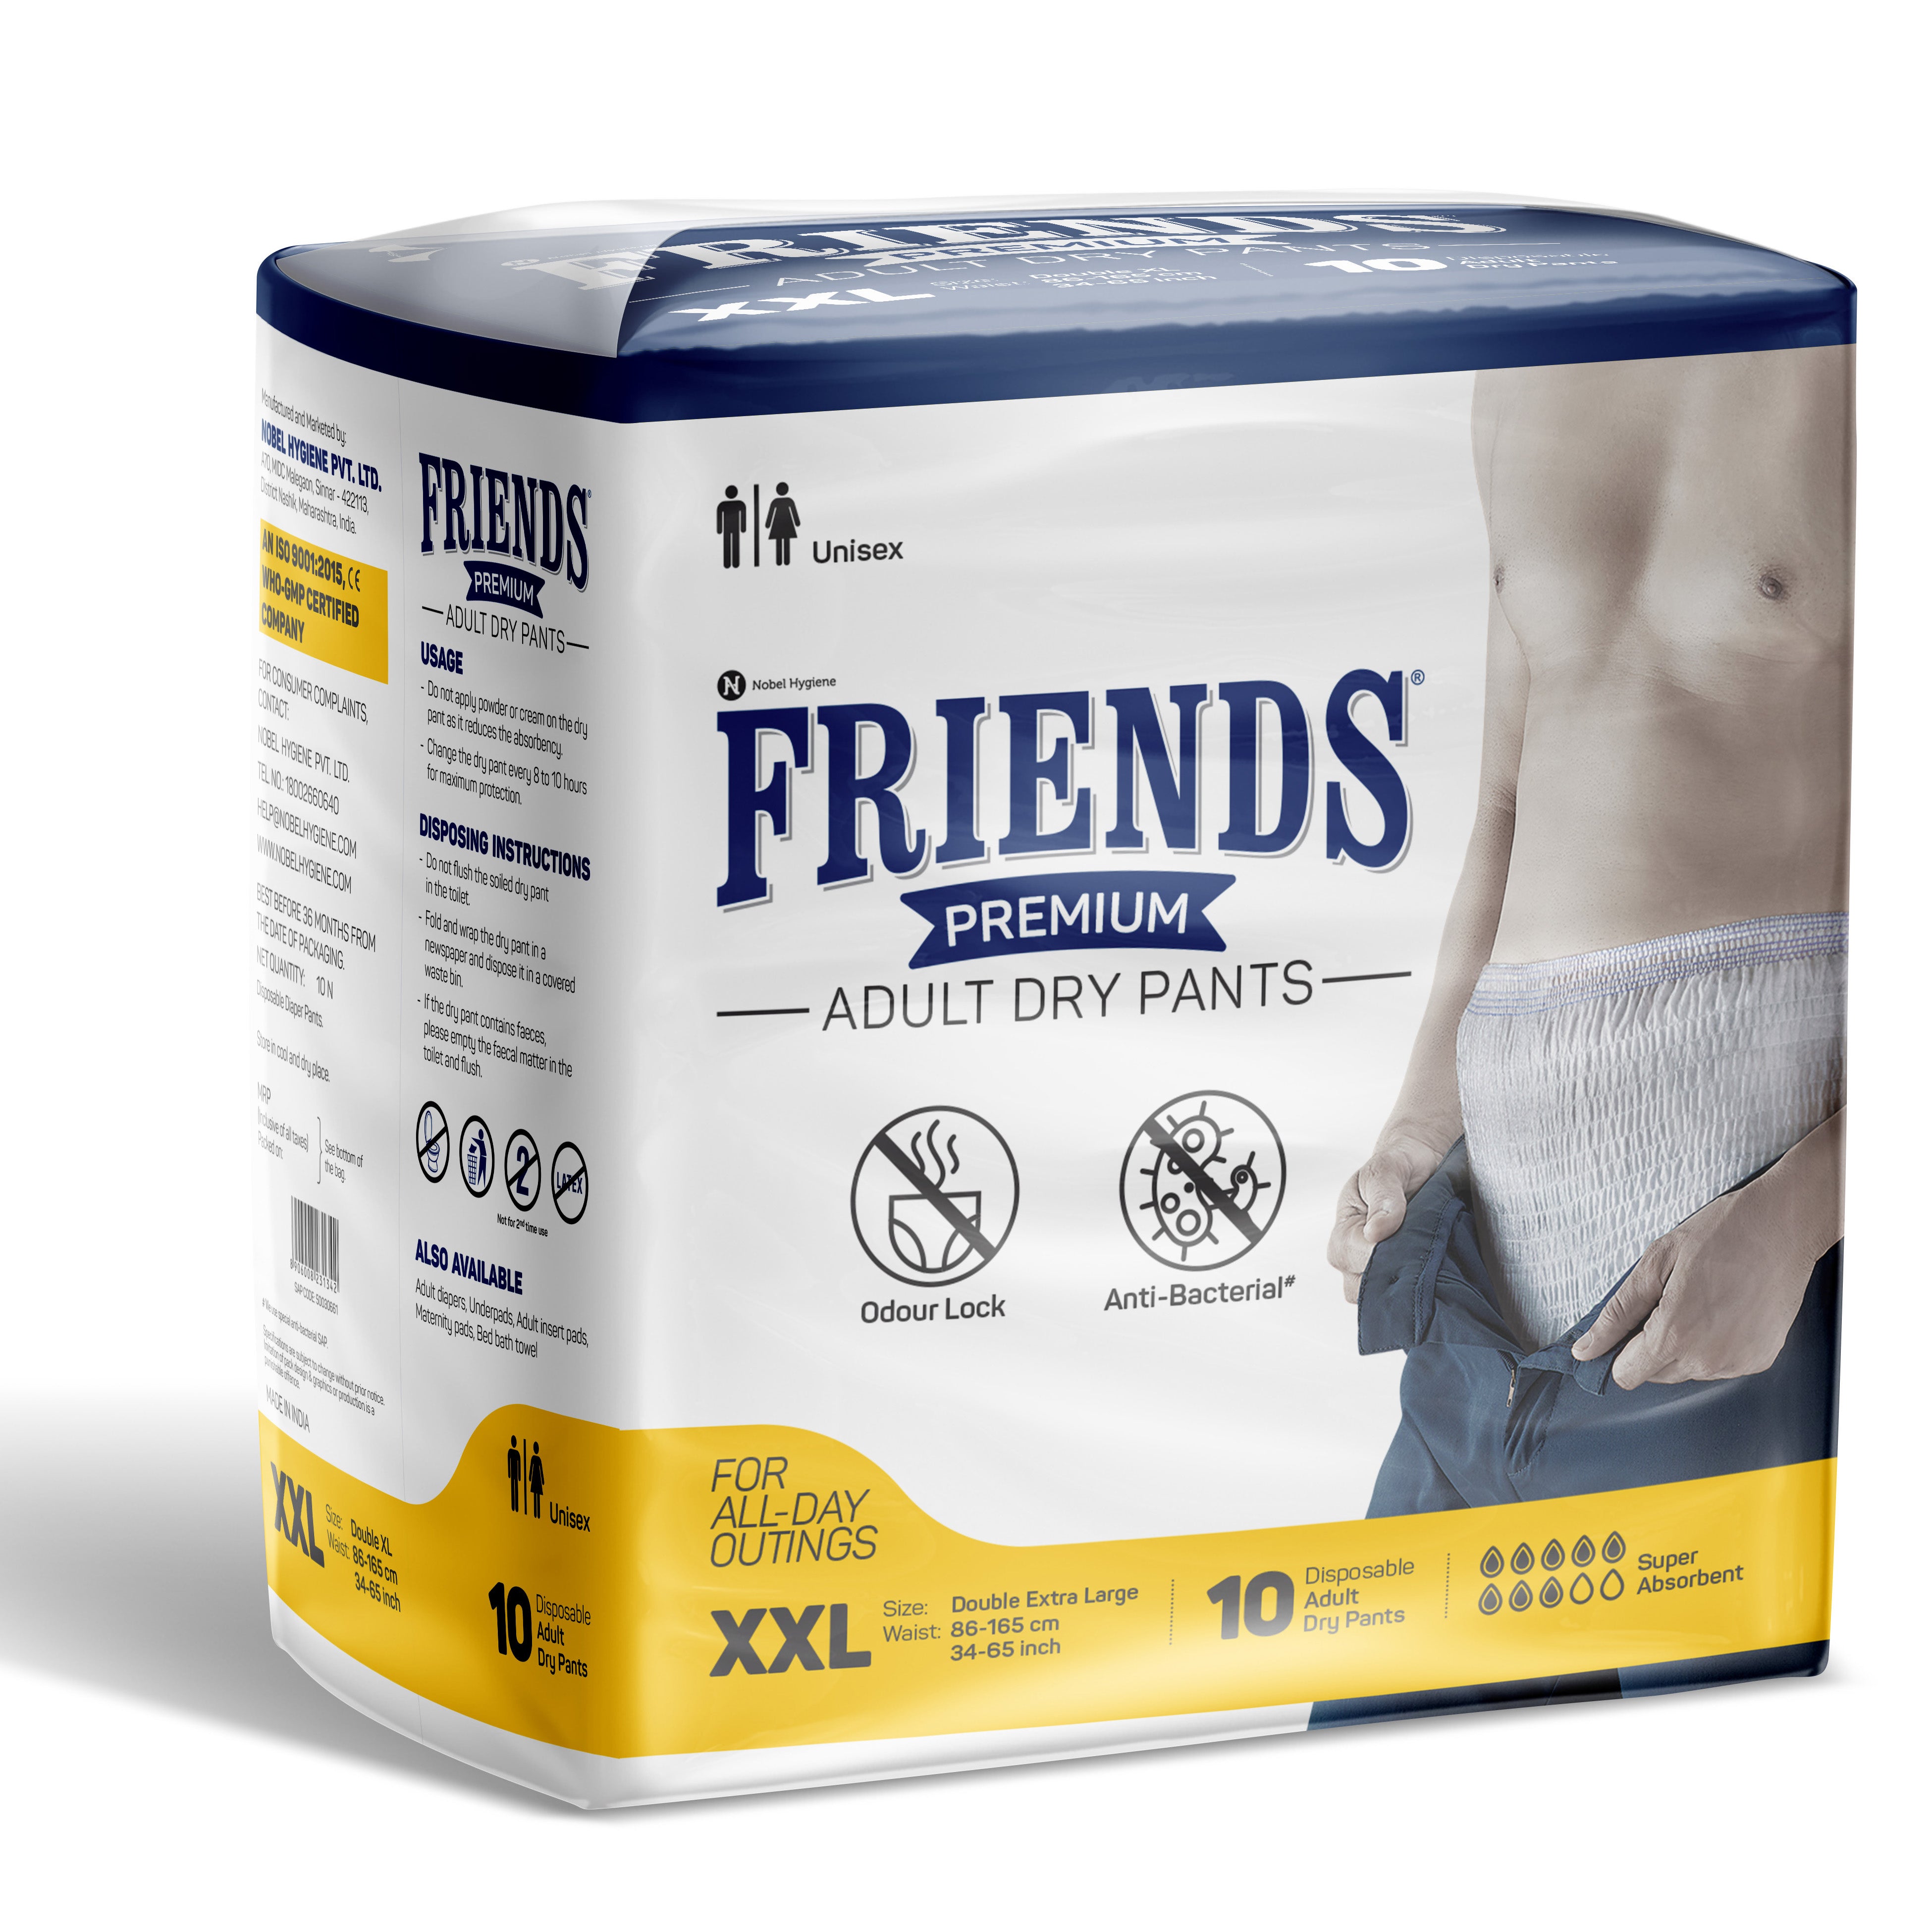 Friends Premium Adult Dry Pants + Classic Underpads Combo